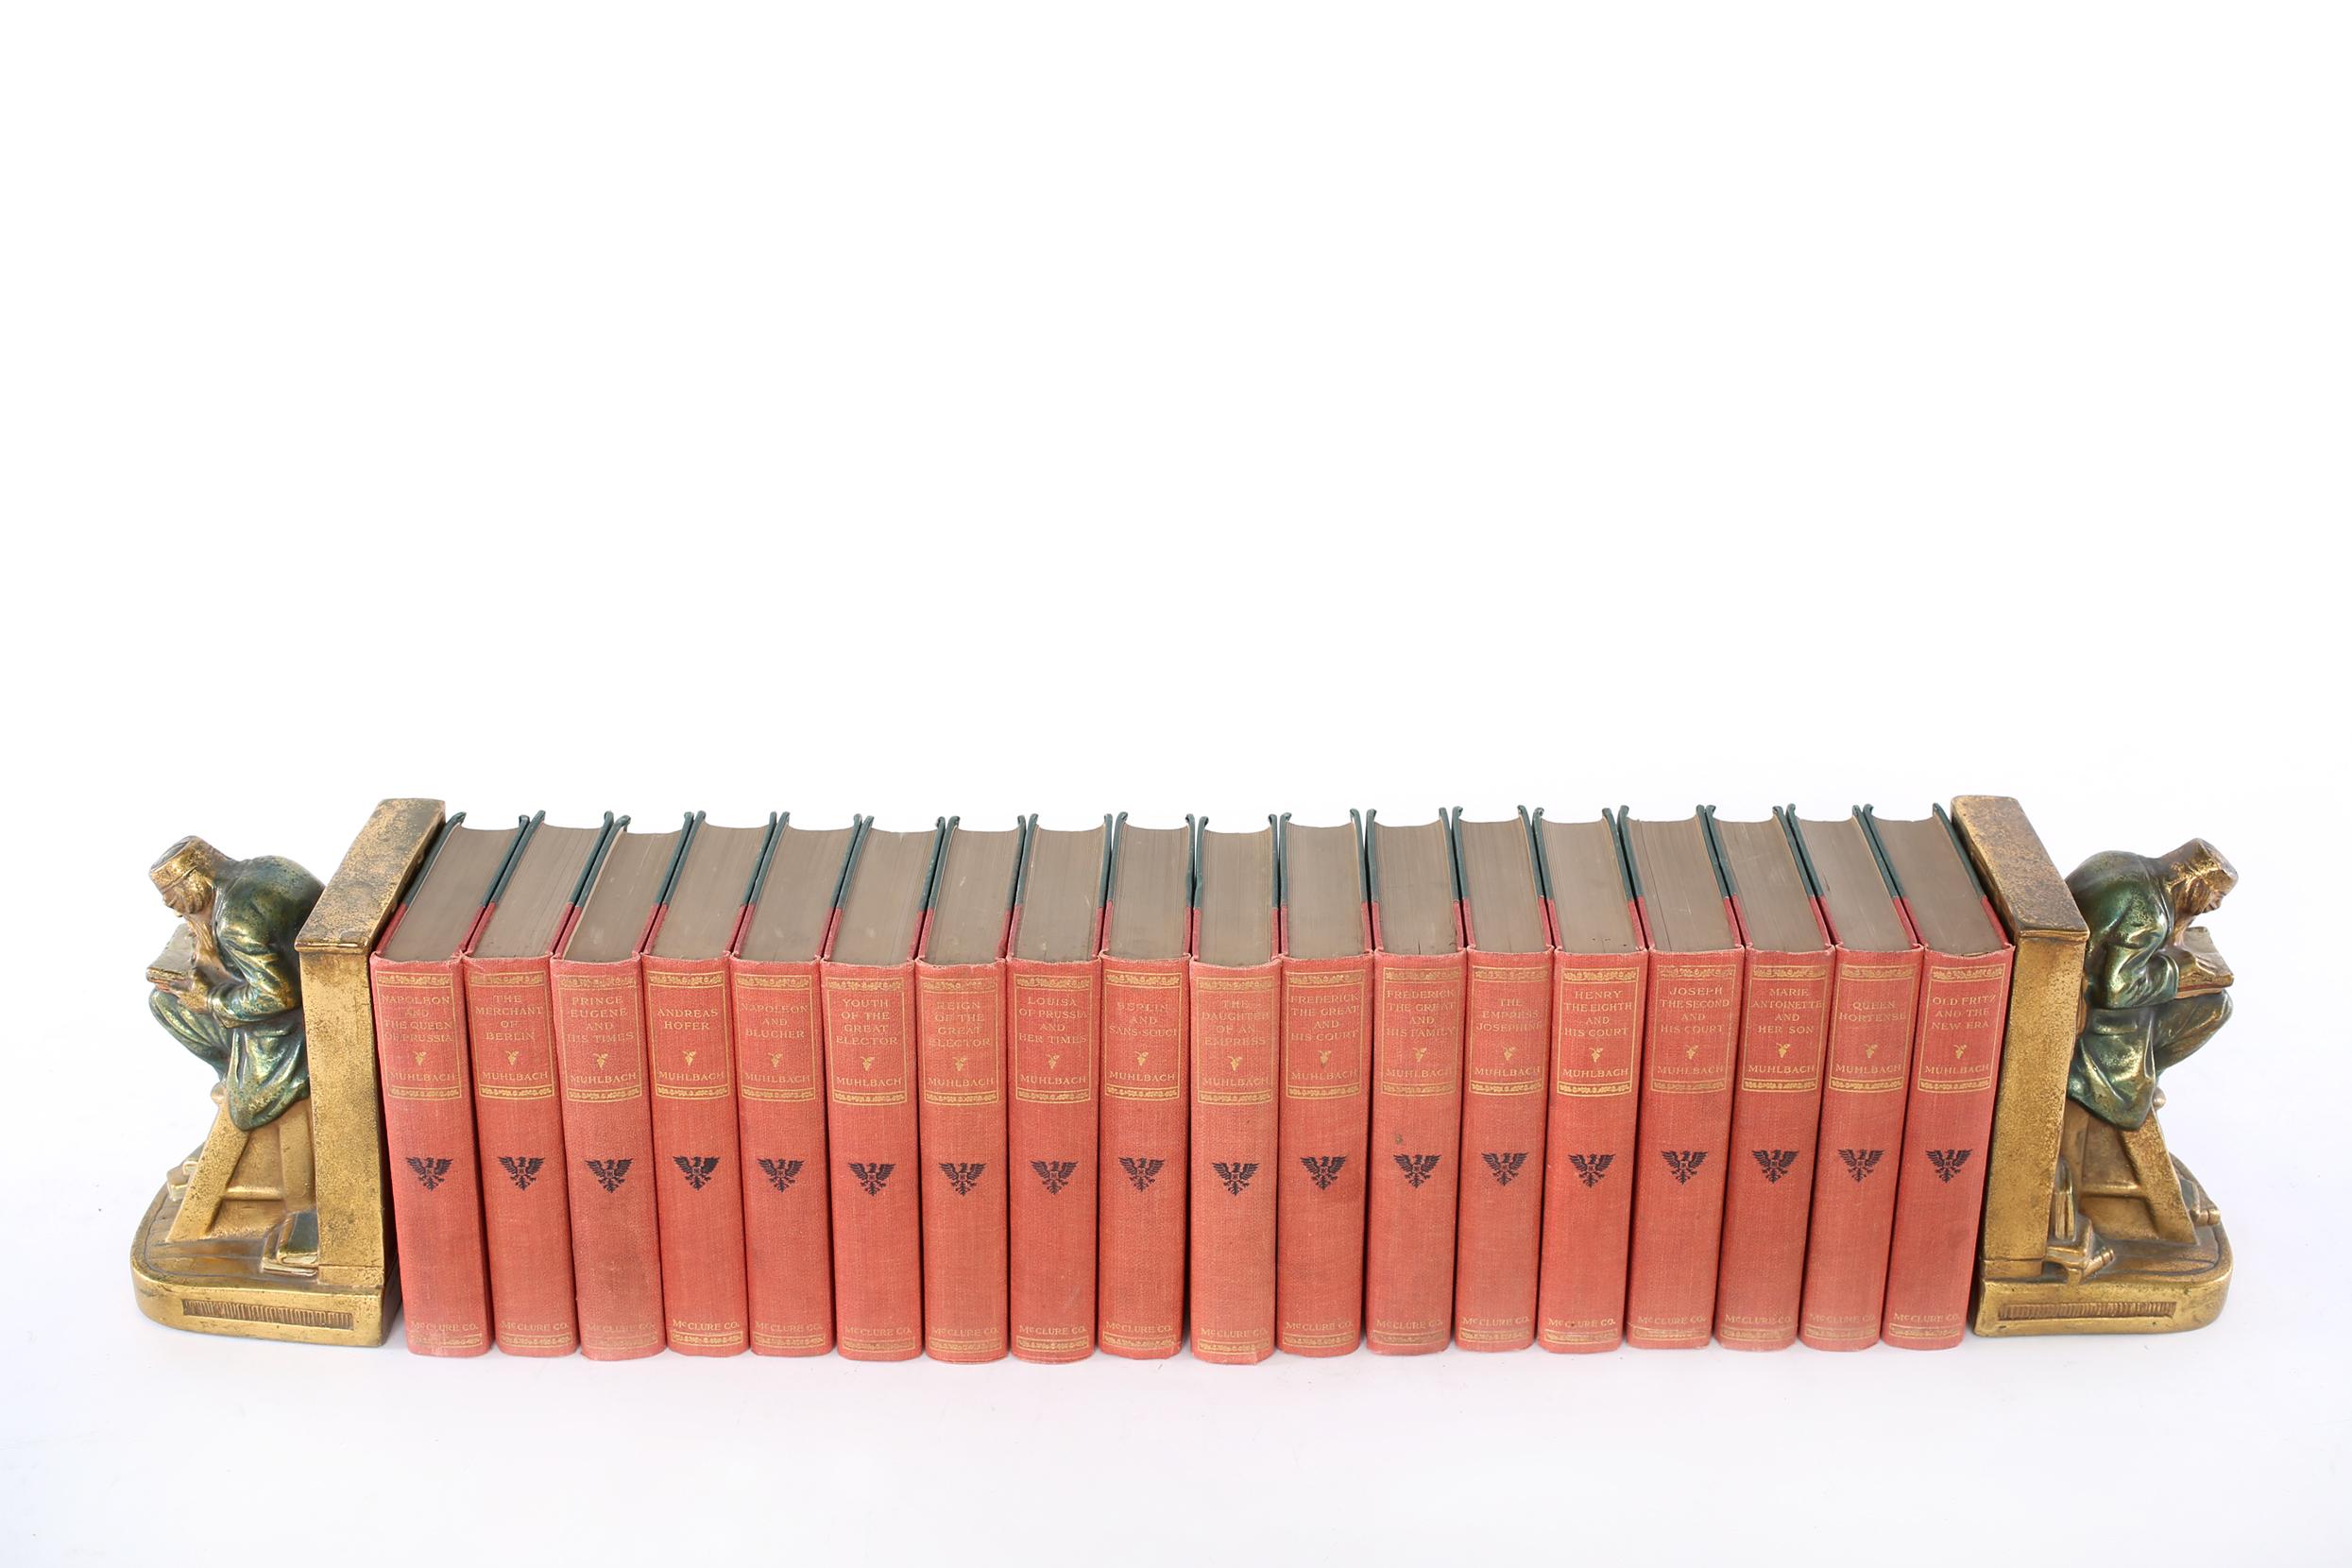 Dekorieren Sie Ihre robuste / Bibliothek Zimmer mit dieser Sammlung von vergoldetem Leder gebunden Bibliothek Buch-Set von achtzehn Bänden. Deutschland in Sturm und Drang 